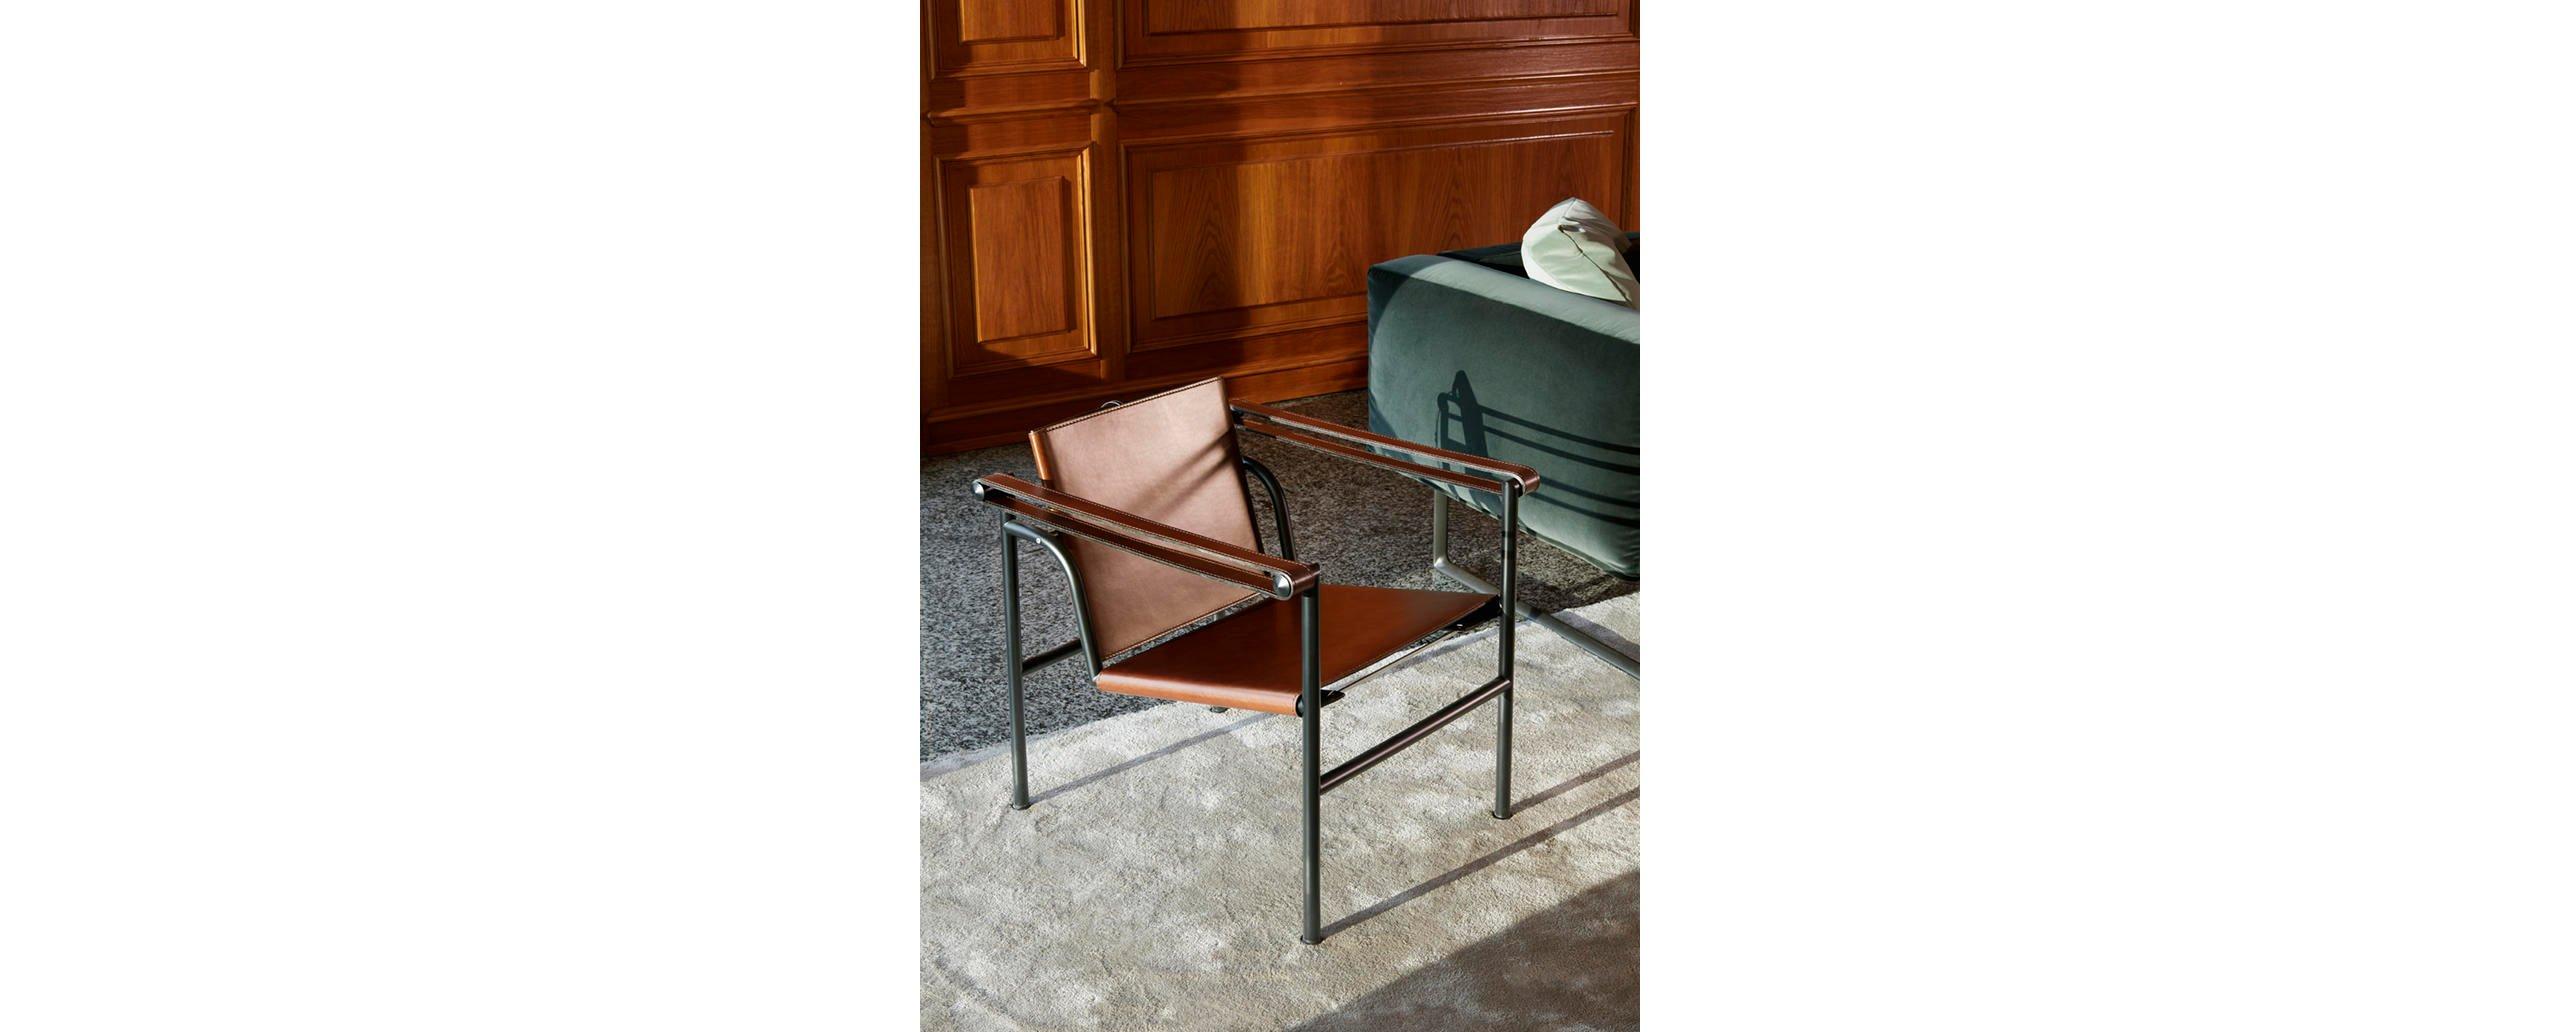 Stuhl, entworfen von Le Corbusier, Pierre Jeanneret und Charlotte Perriand im Jahr 1928. Neu aufgelegt im Jahr 1965.
Hergestellt von Cassina in Italien.

Ein leichter, kompakter Stuhl, der zusammen mit anderen wichtigen Modellen wie den Sesseln LC2